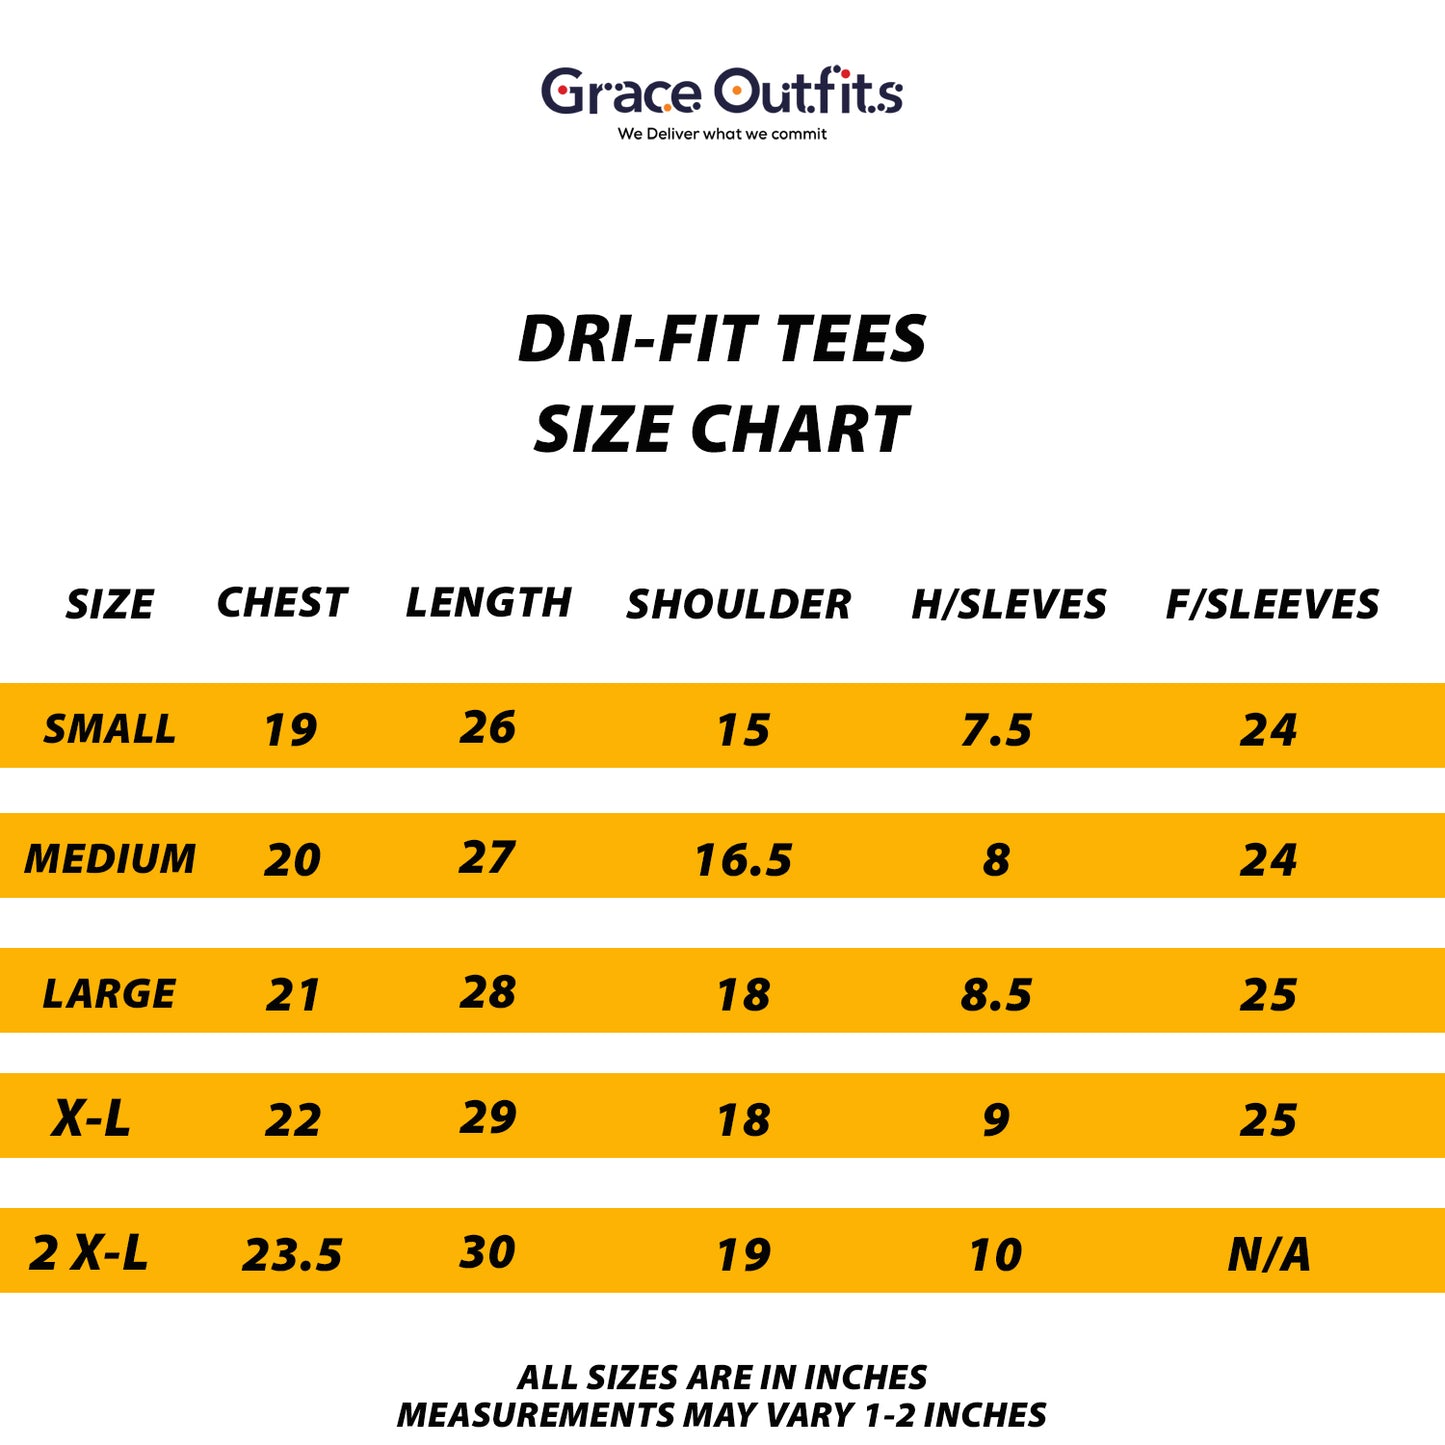 Adidas Dri-FIT T-Shirt Steel Gray